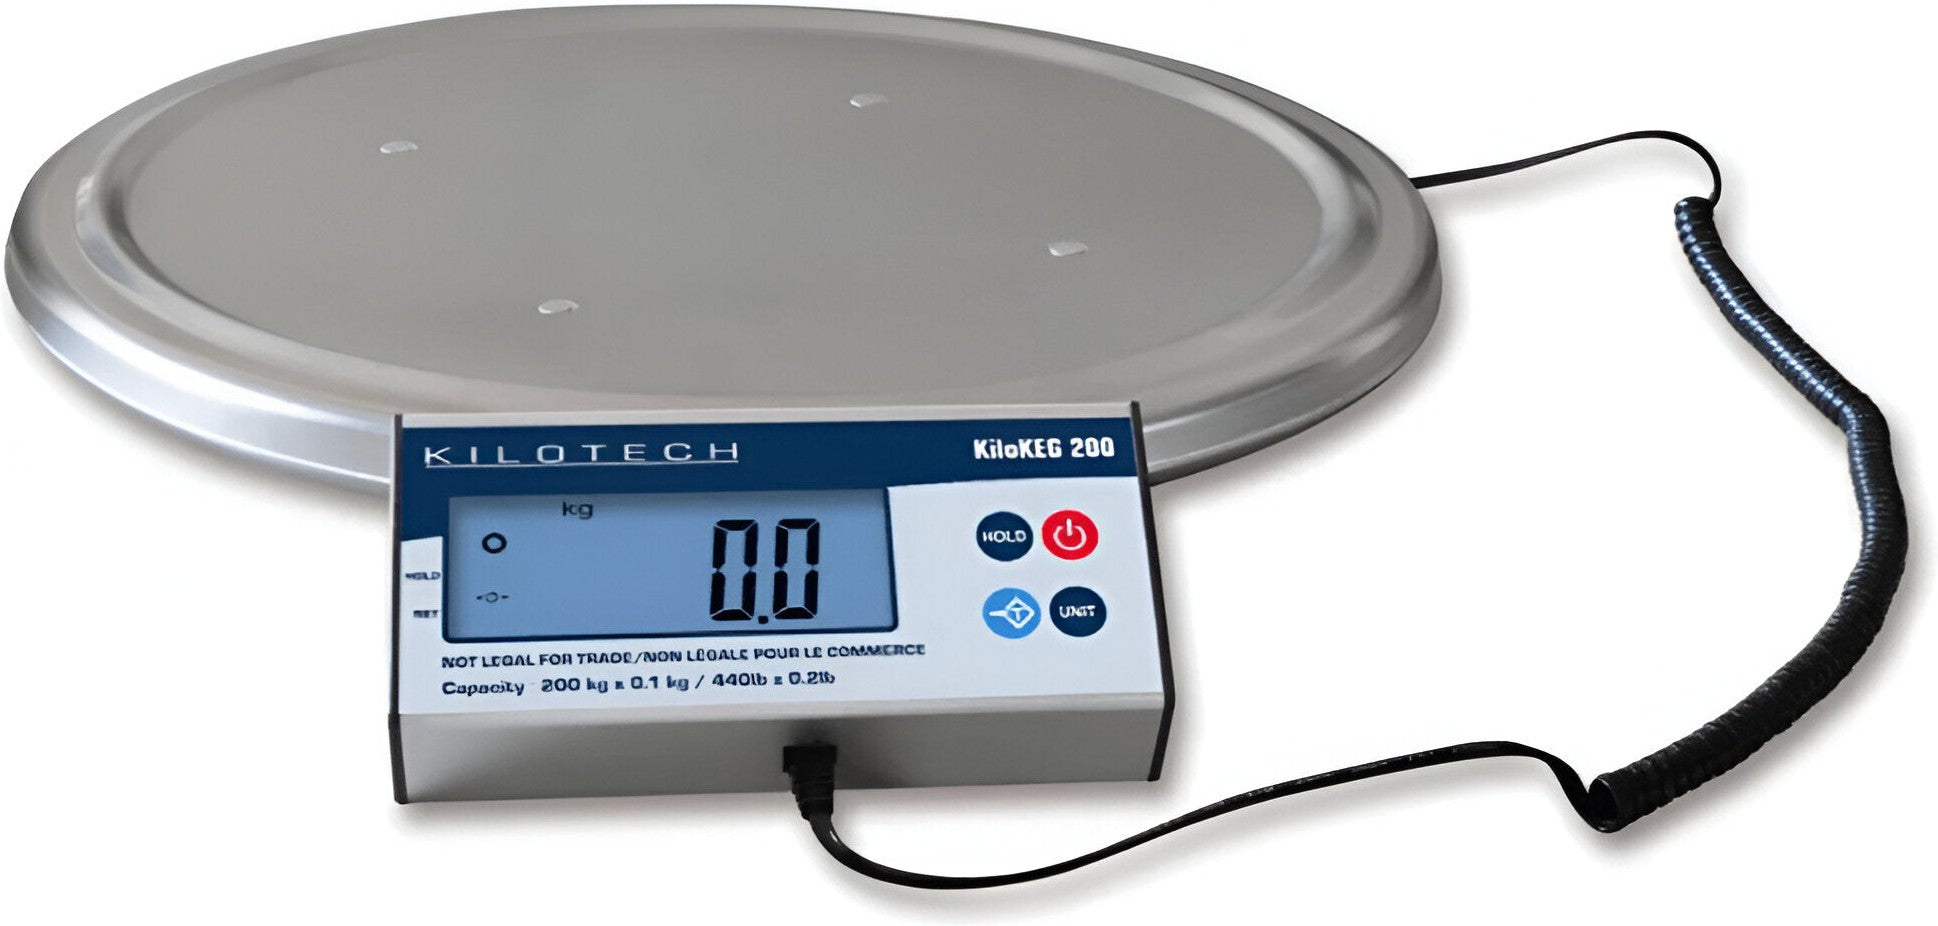 Kilotech - KILOKEG 200 440 lb x 0.2 lb Digital Keg Scale with Remote Display - K851249